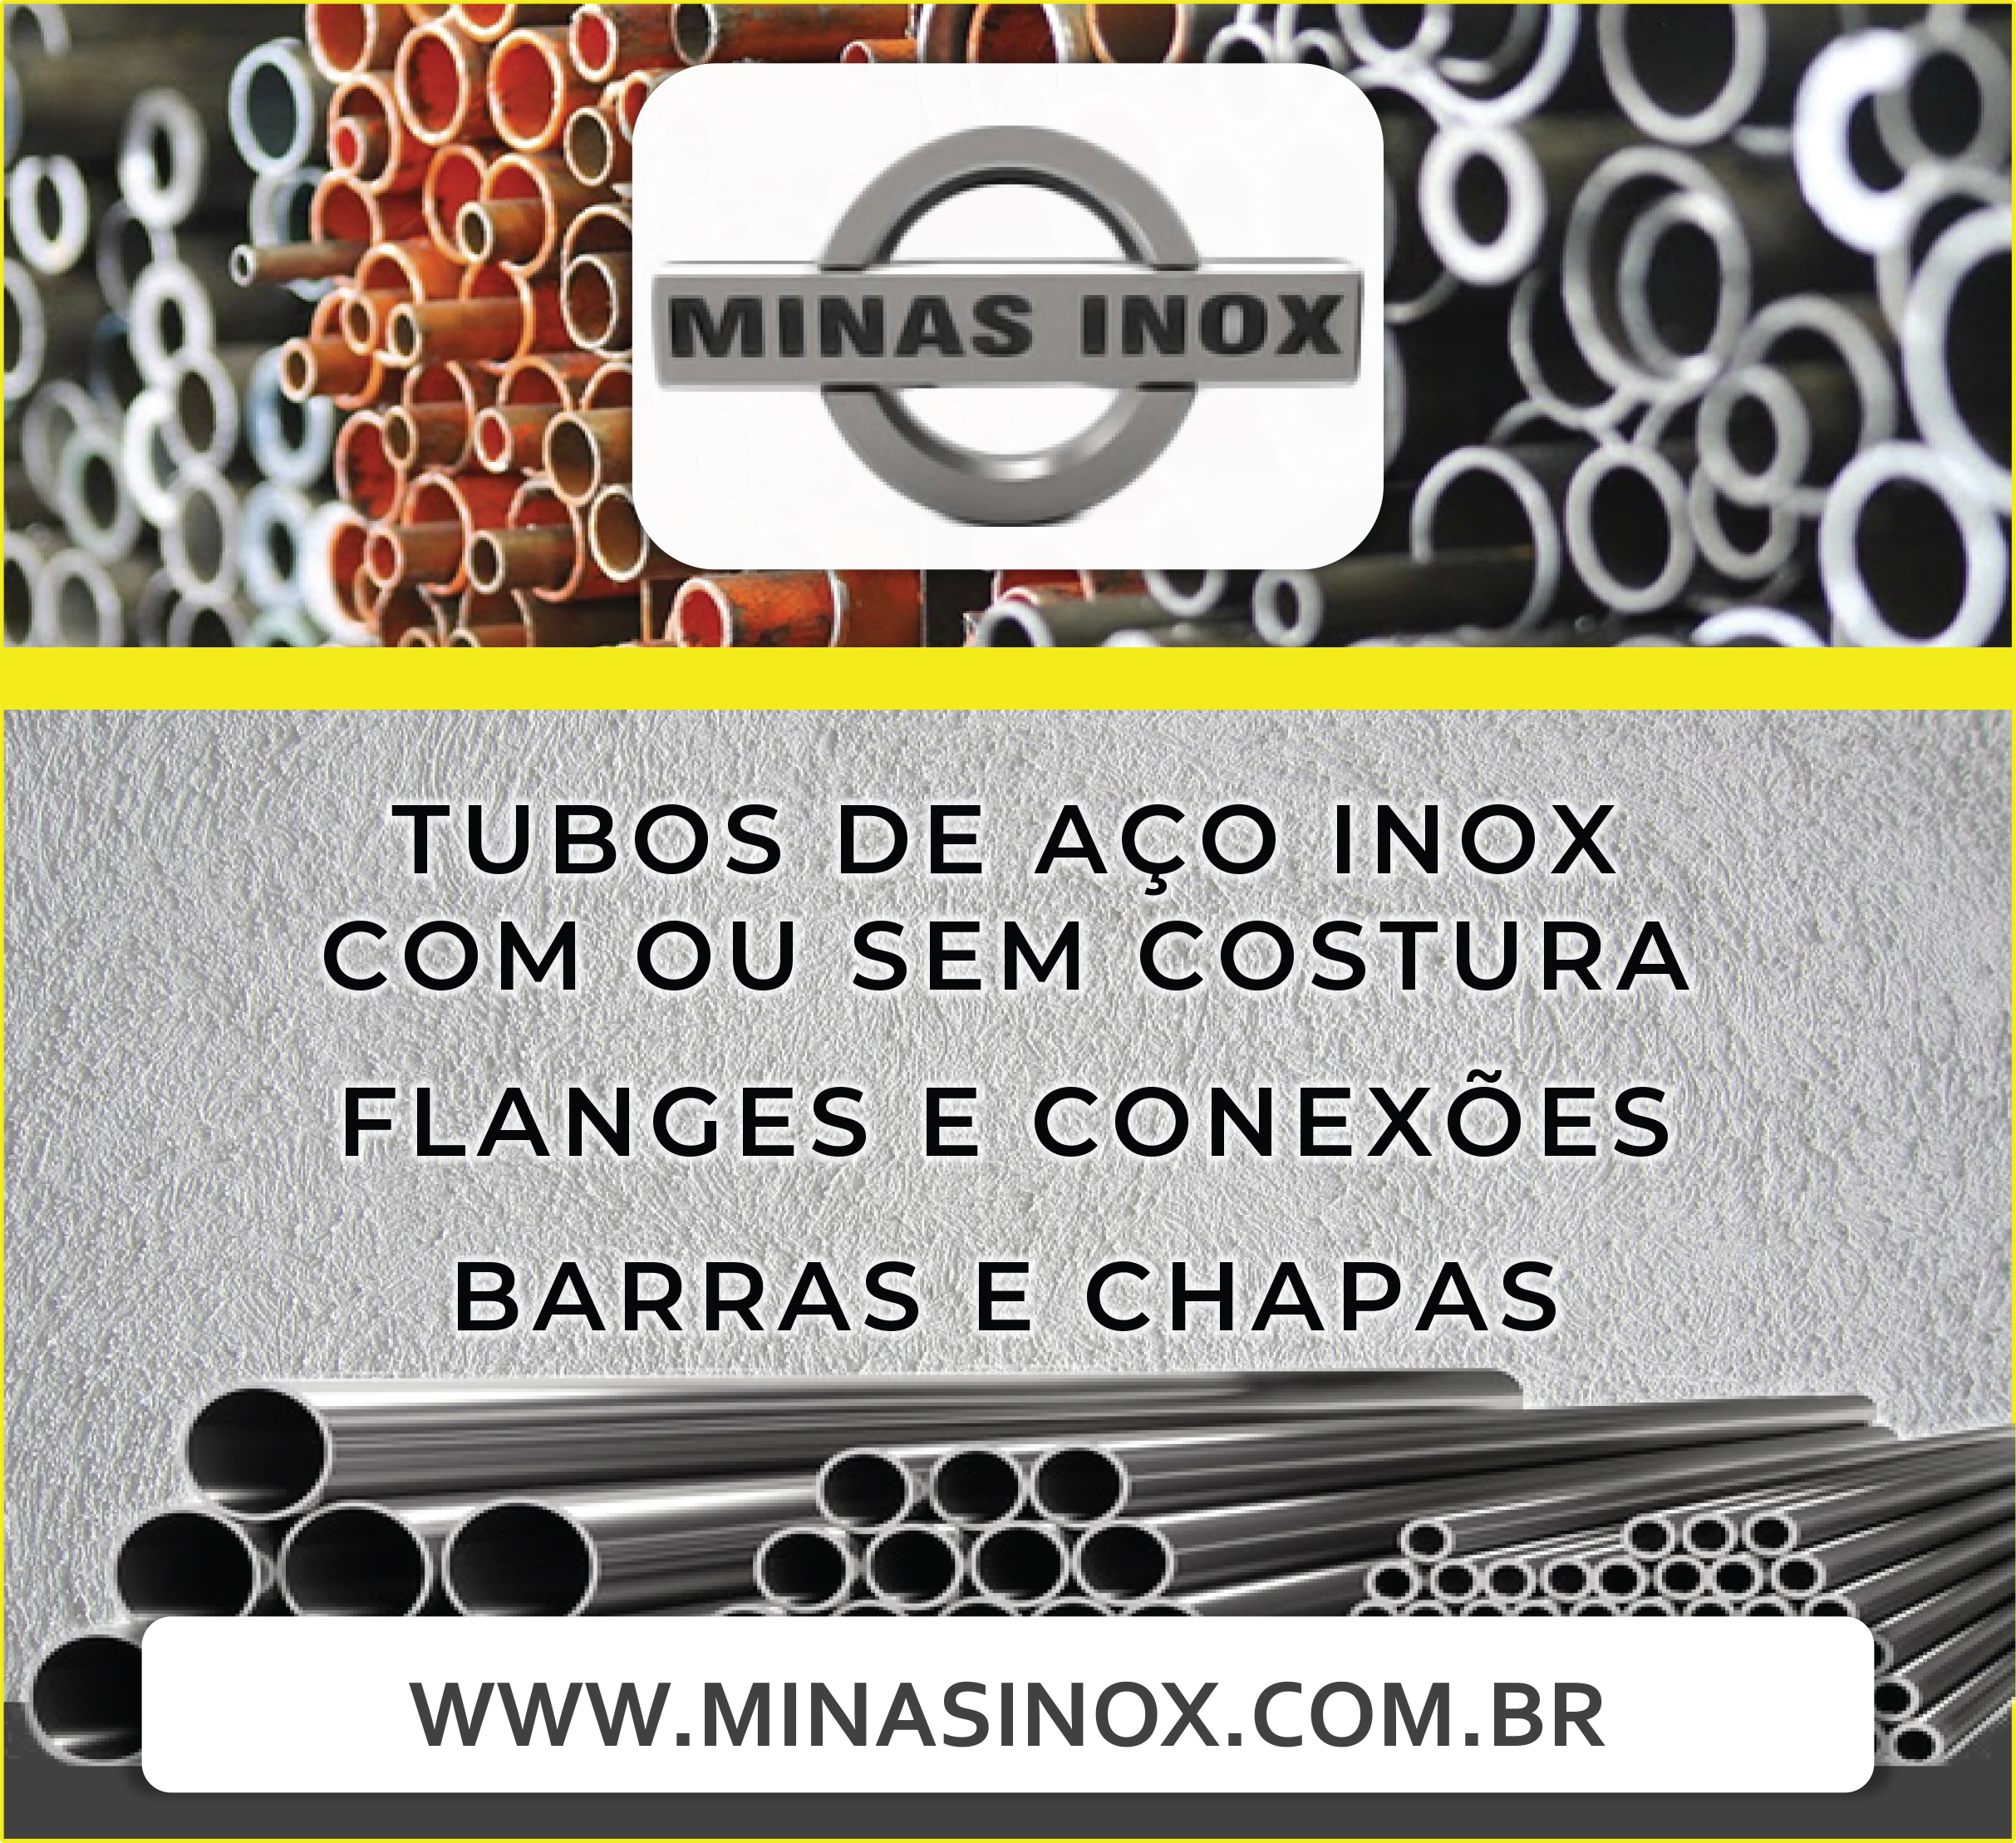 Minas Inox Flanges, Válvulas, Conexões e Tubos com ou sem costura